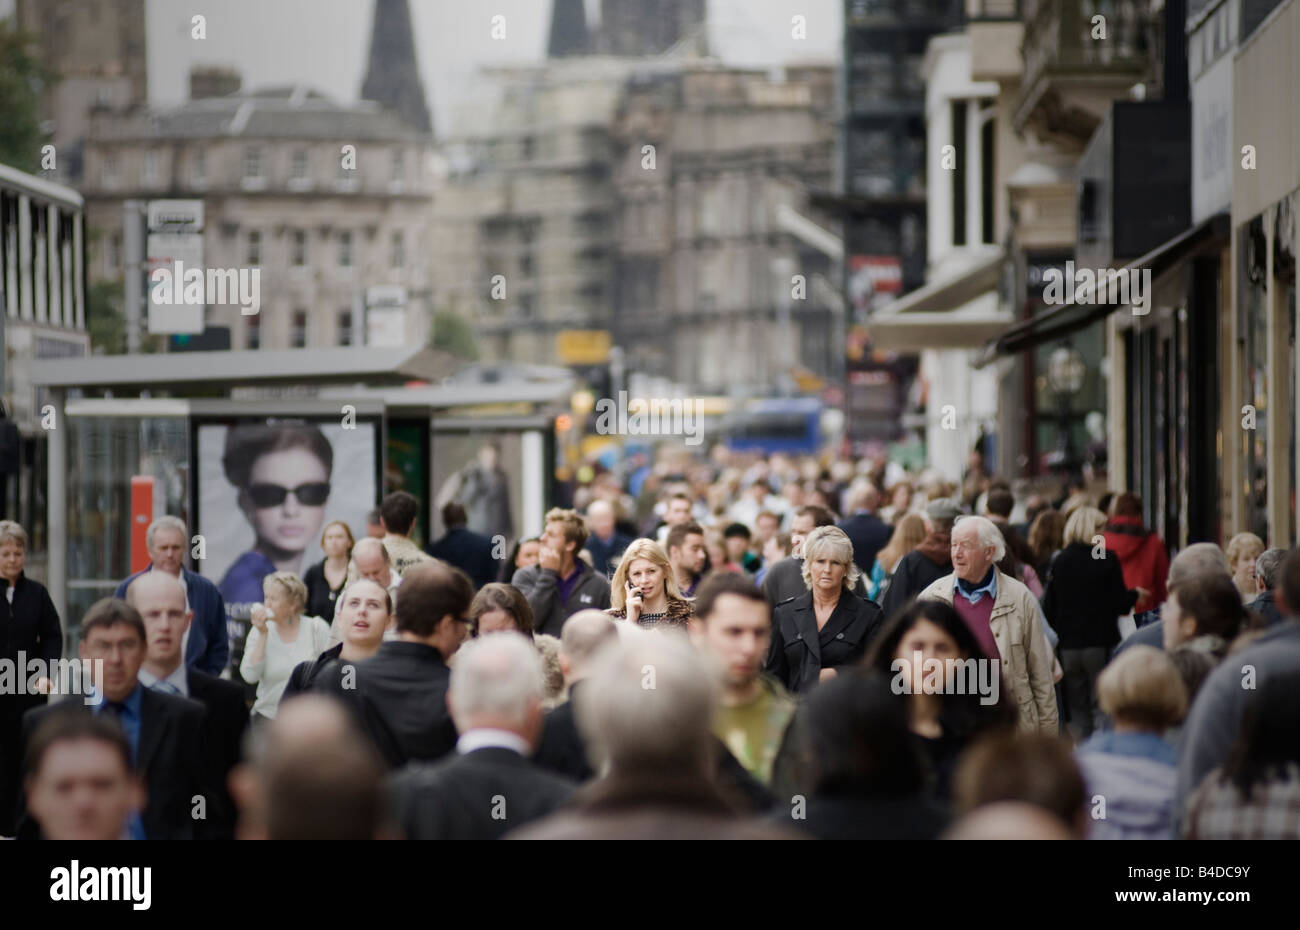 La calle Princes Street de Edimburgo en un día ocupado con muchas personas de compras Foto de stock